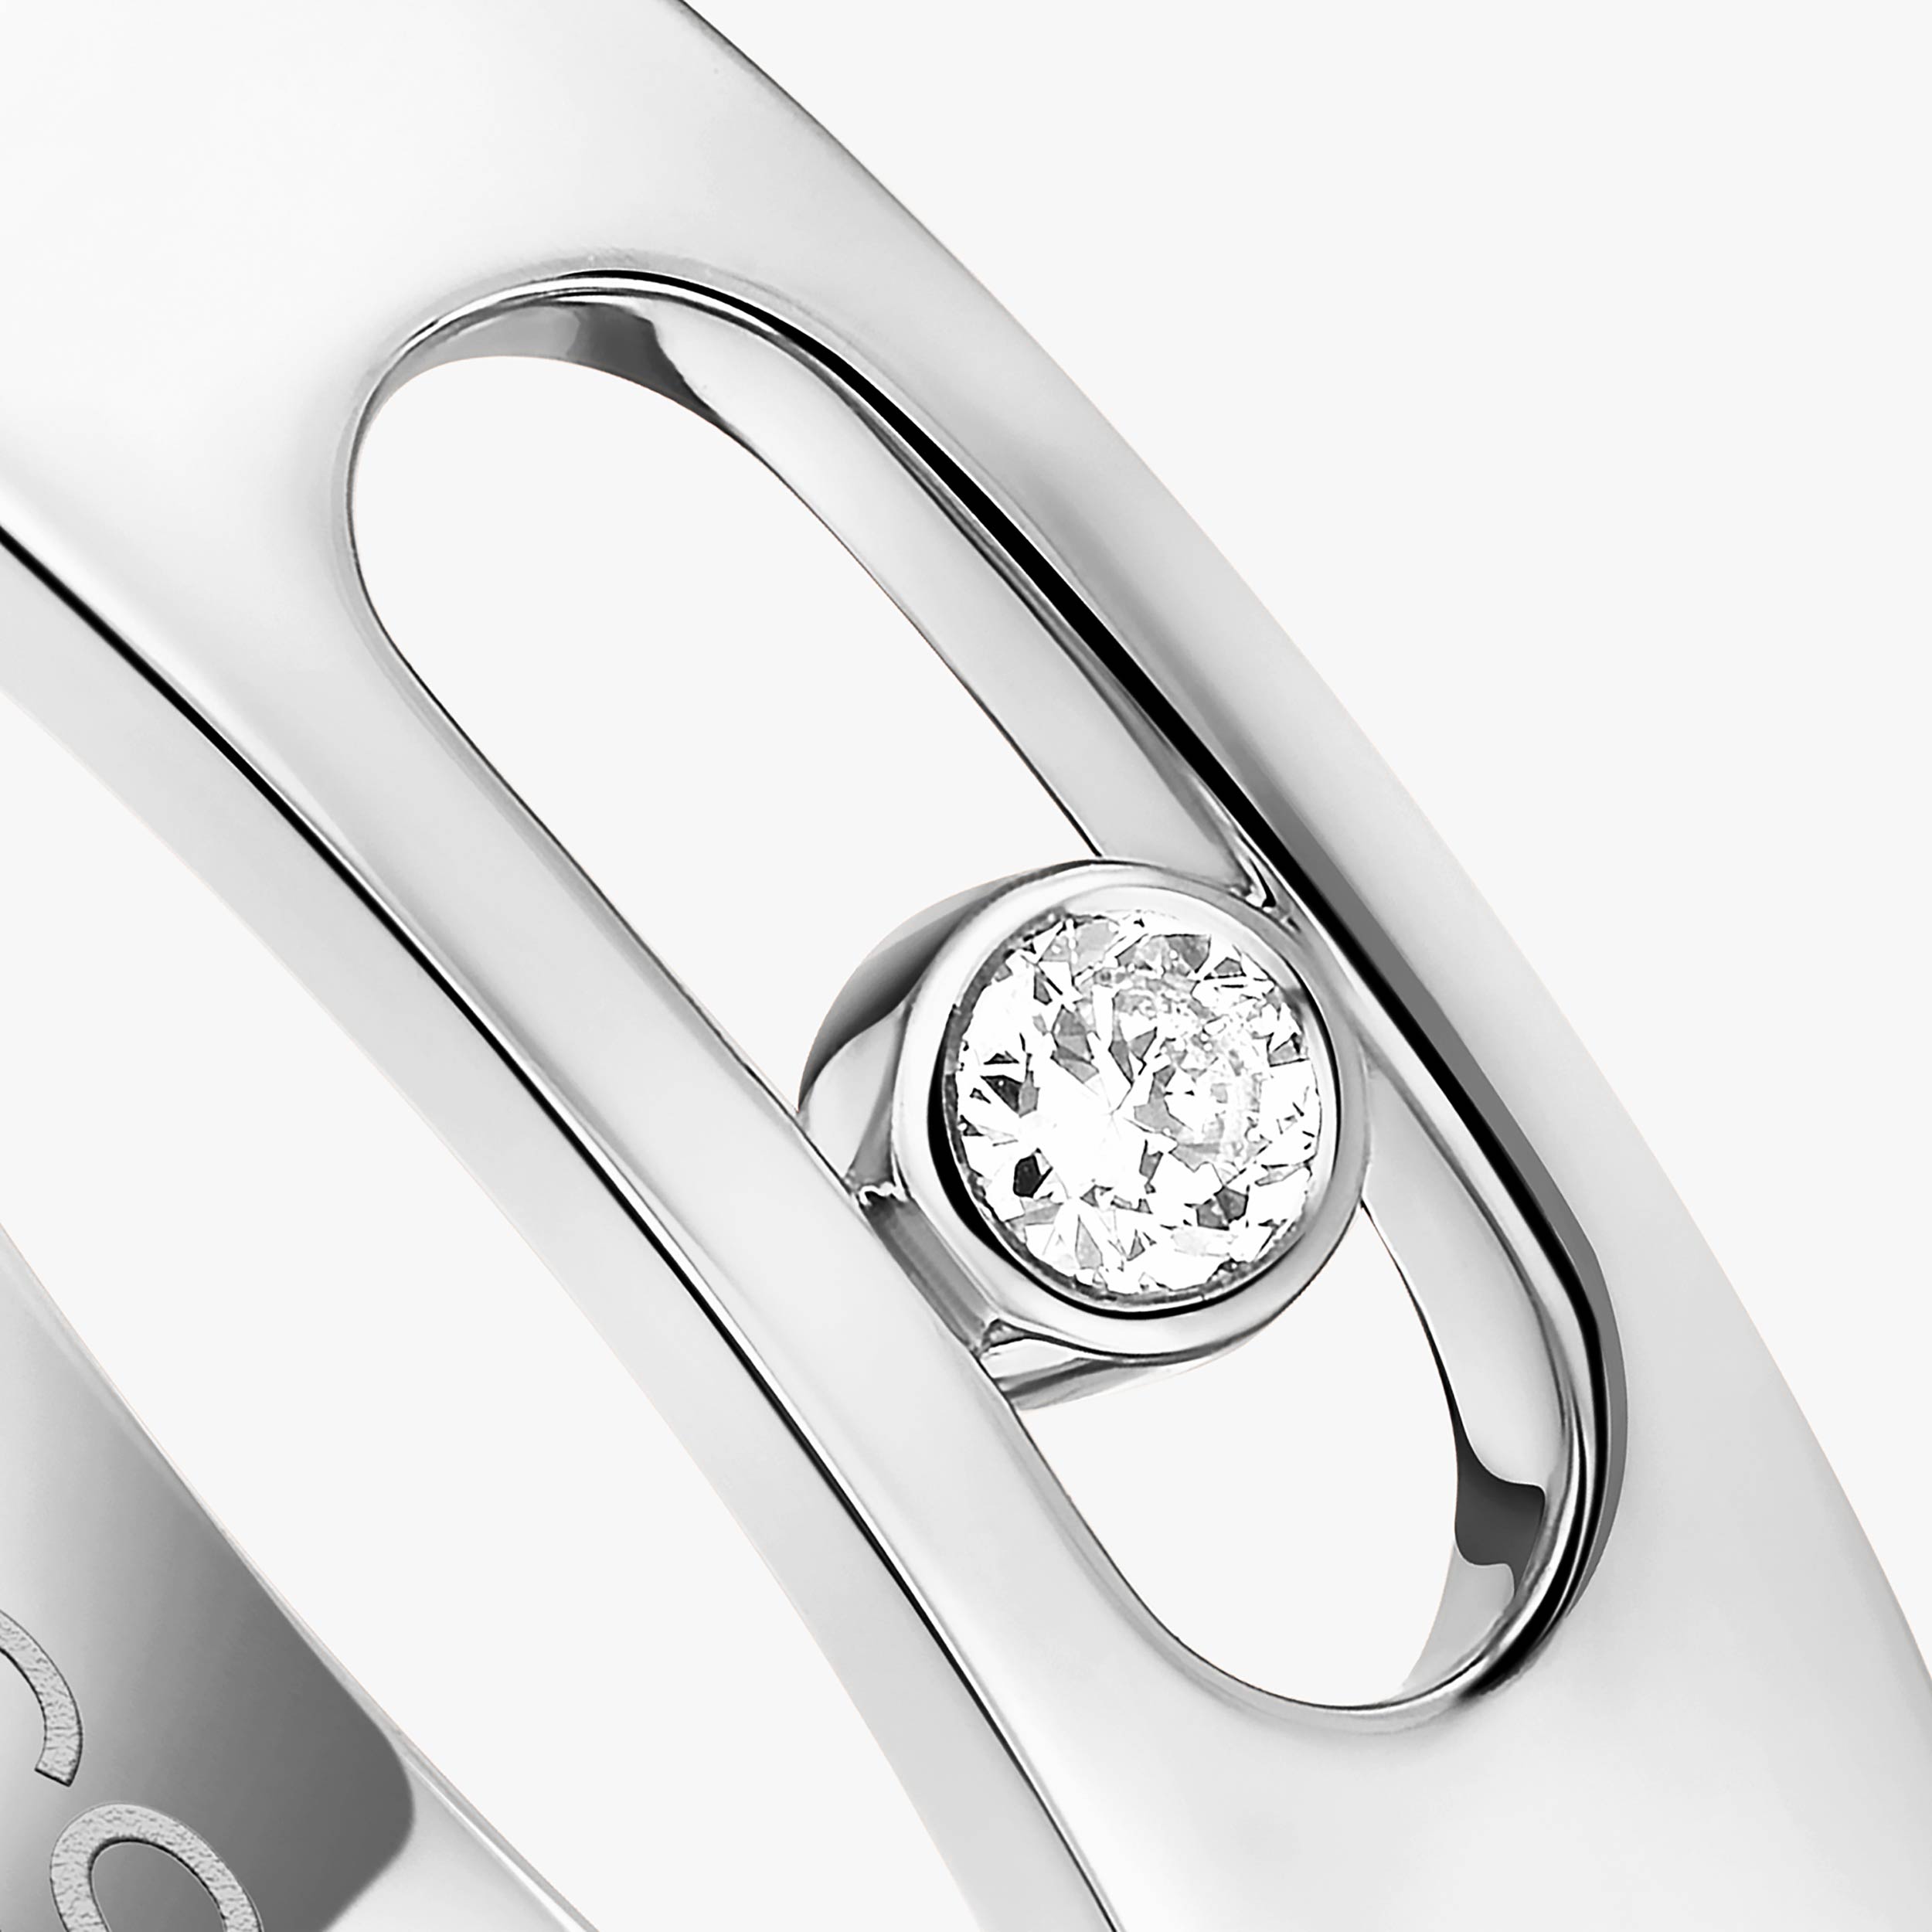 Ring For Her White Gold Diamond Move Joaillerie Wedding Ring 13553-WG